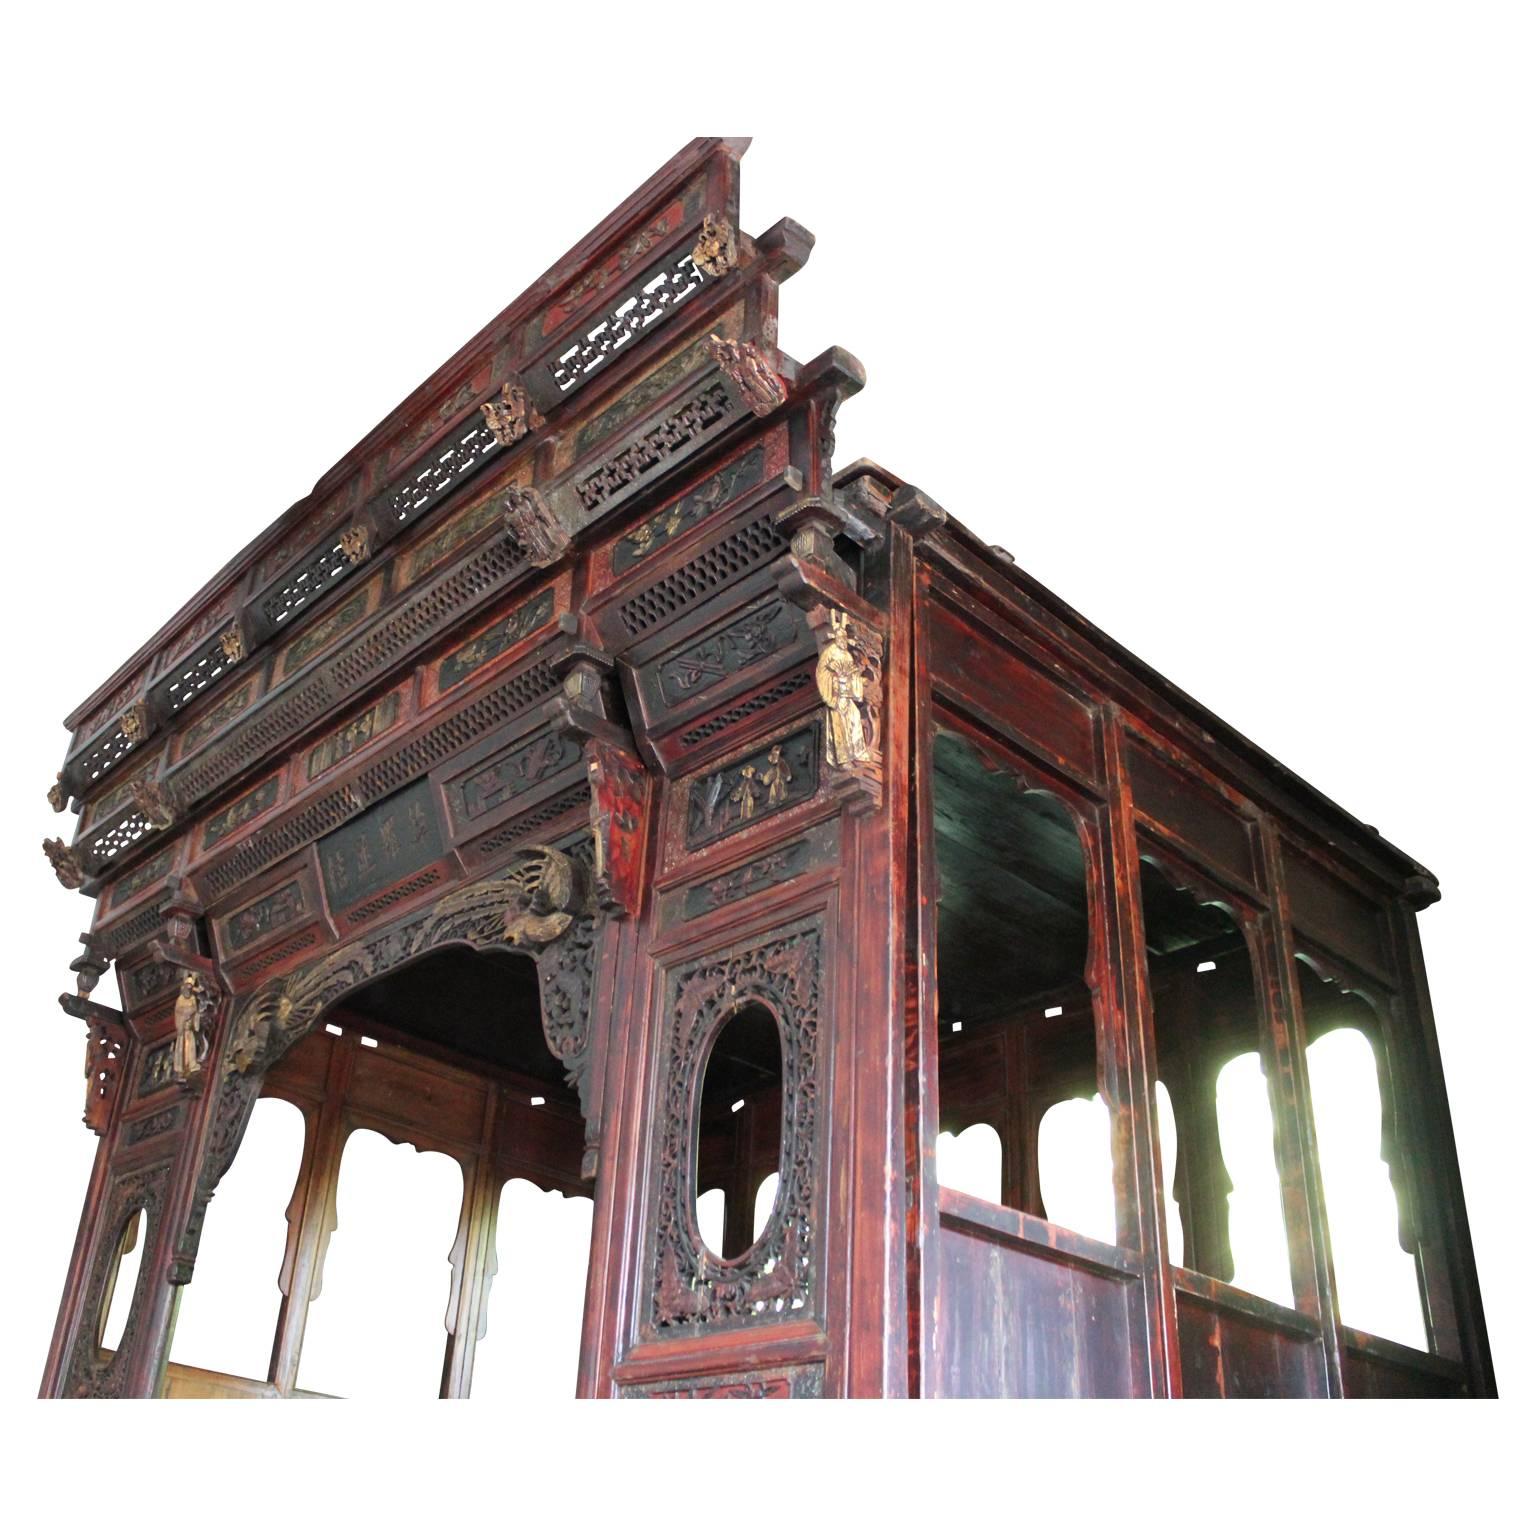 Traditionelles chinesisches Hochzeitsbett mit Plattform und handgeschnitzten Details (Chinesischer Export)